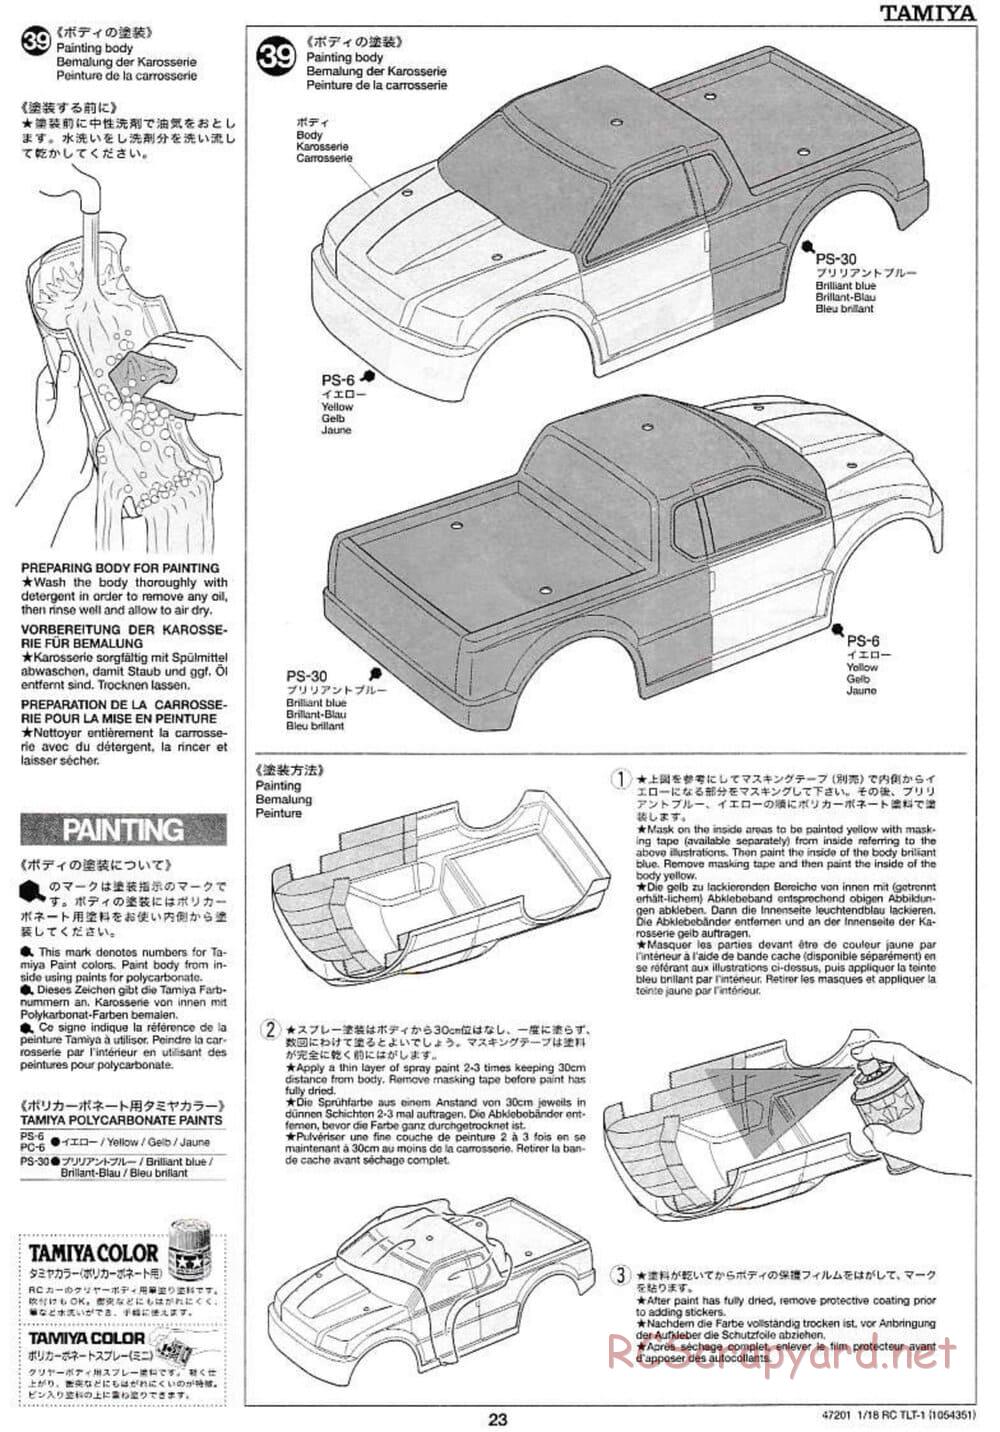 Tamiya - Rock Buster - TLT-1 Chassis - Manual - Page 23